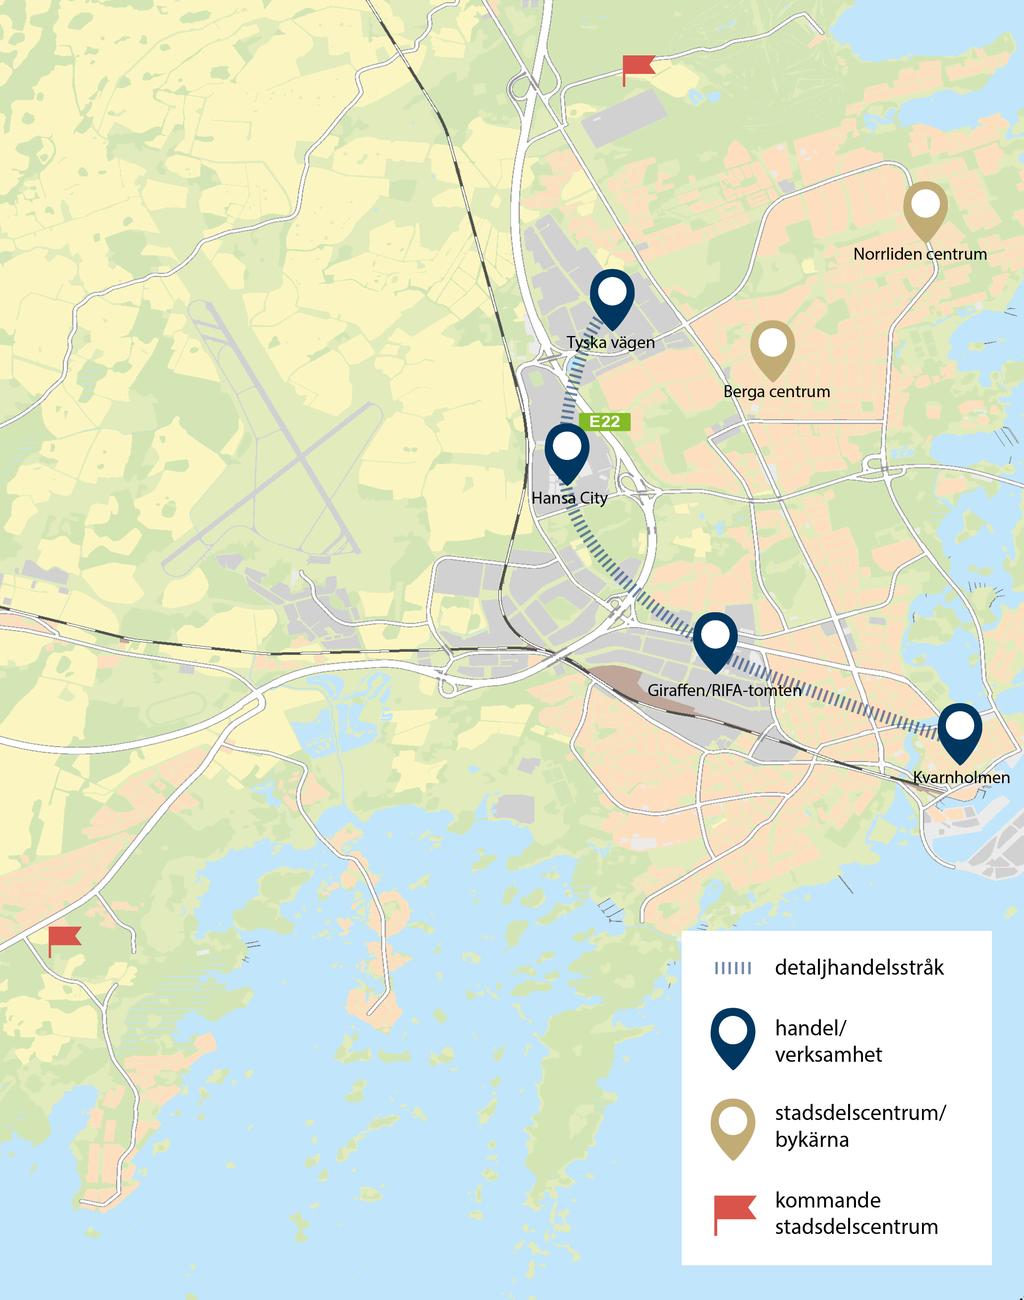 Handelsstruktur inriktning och profil Handelskoncentrationerna i Kalmar ligger längs ett stråk från Kvarnholmen, via Giraffen och Hansa City till och med Tyska vägen.